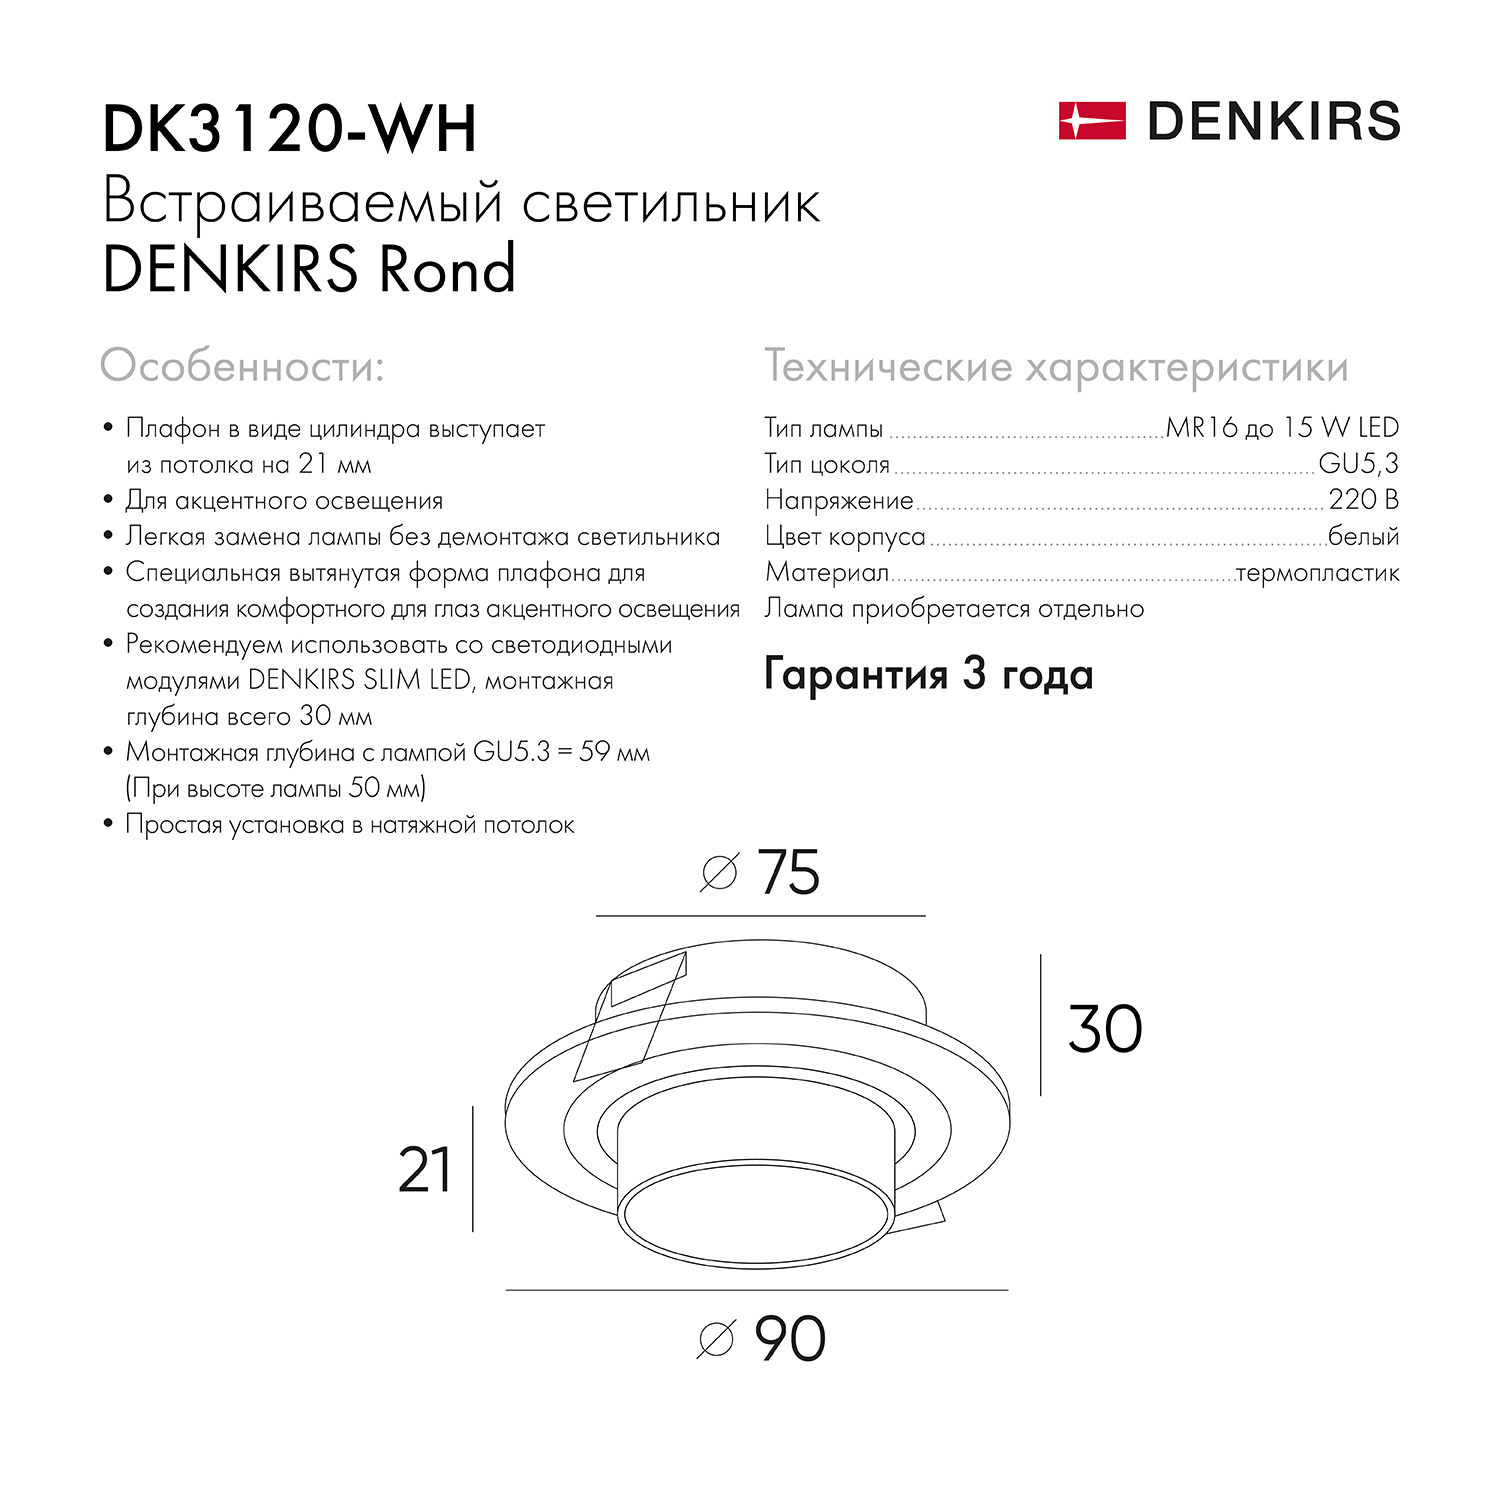 DK3120-WH